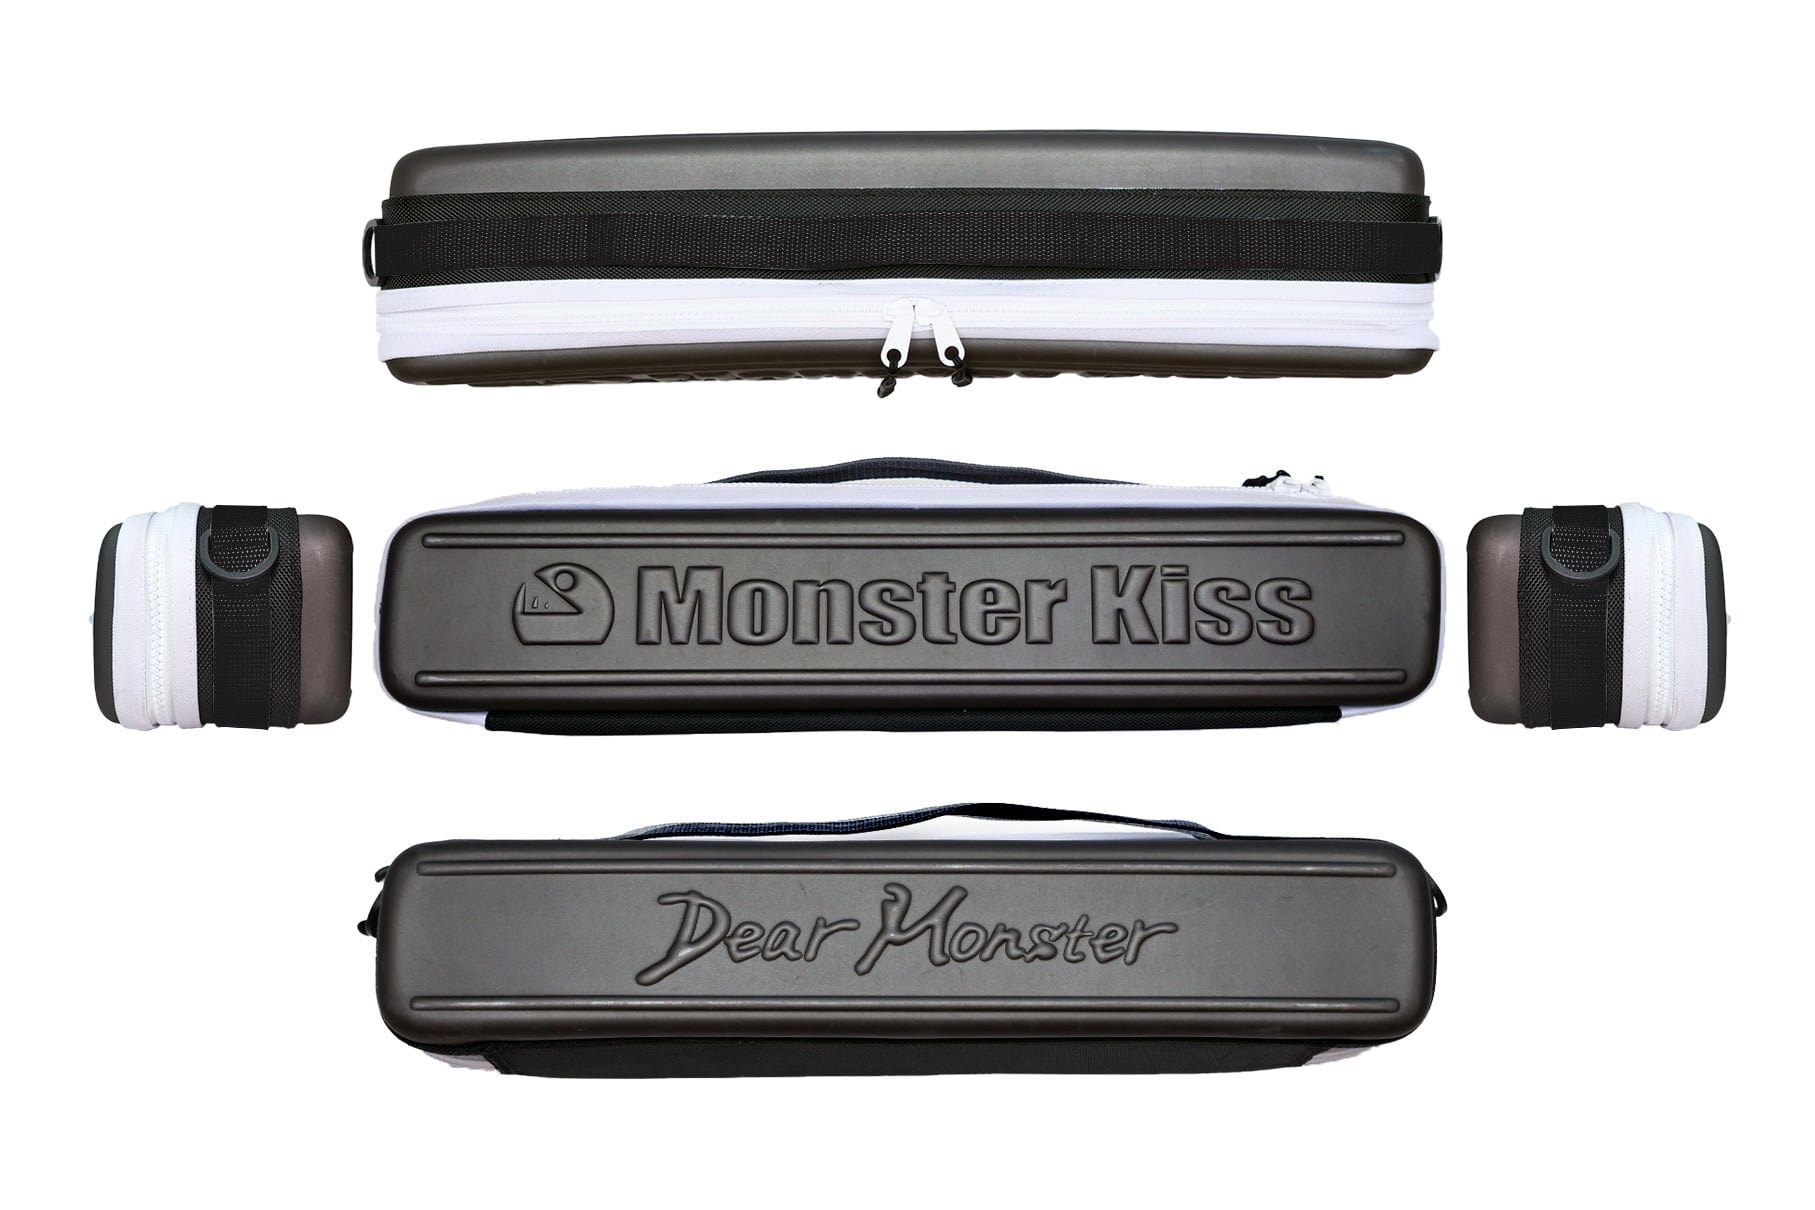 MX-7S (Dear Monster) | Monster Kiss Official Online Store